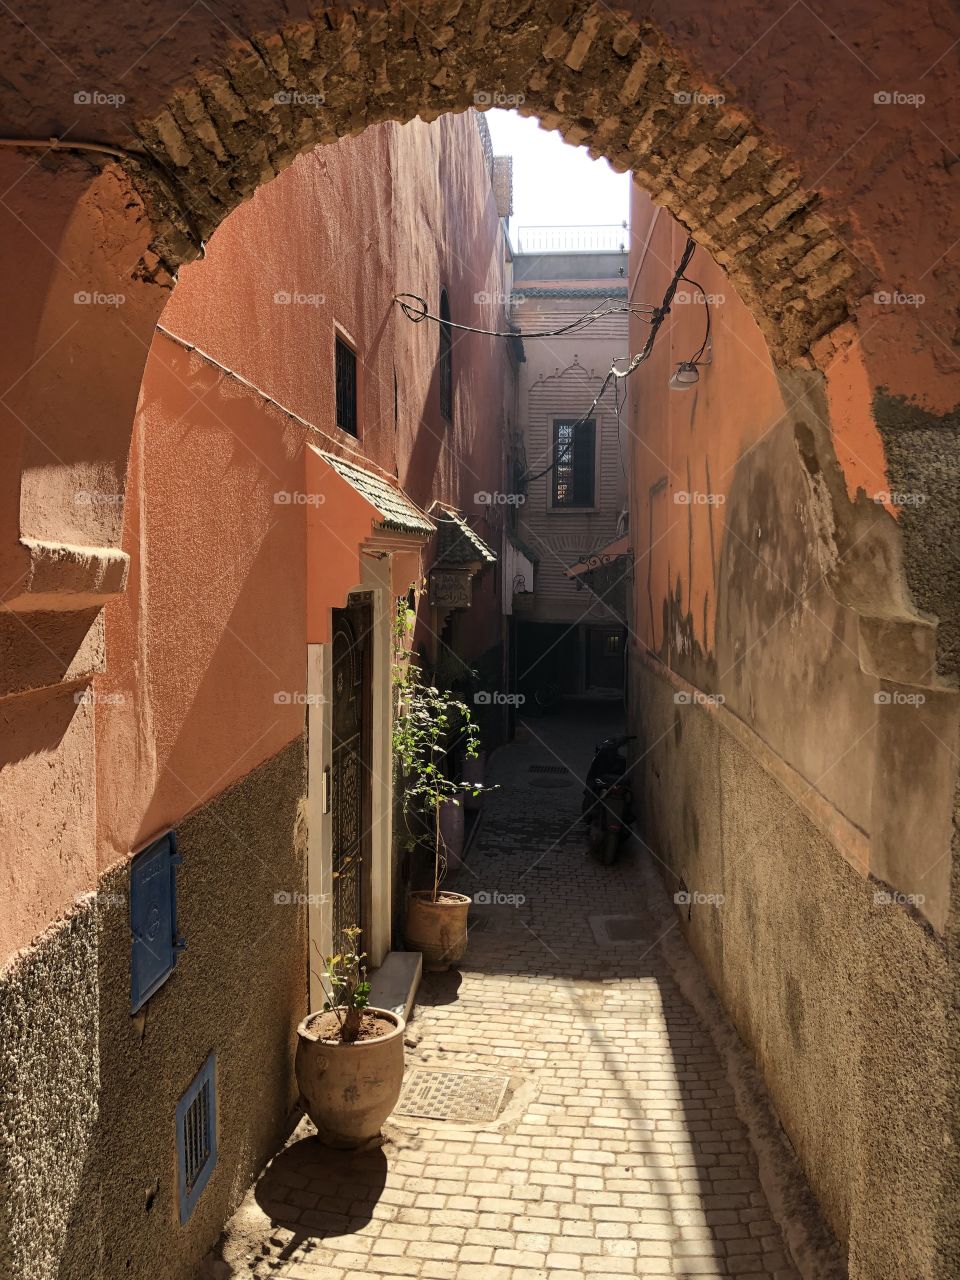 Narrow street in Marrakech’s souks, Marroco.